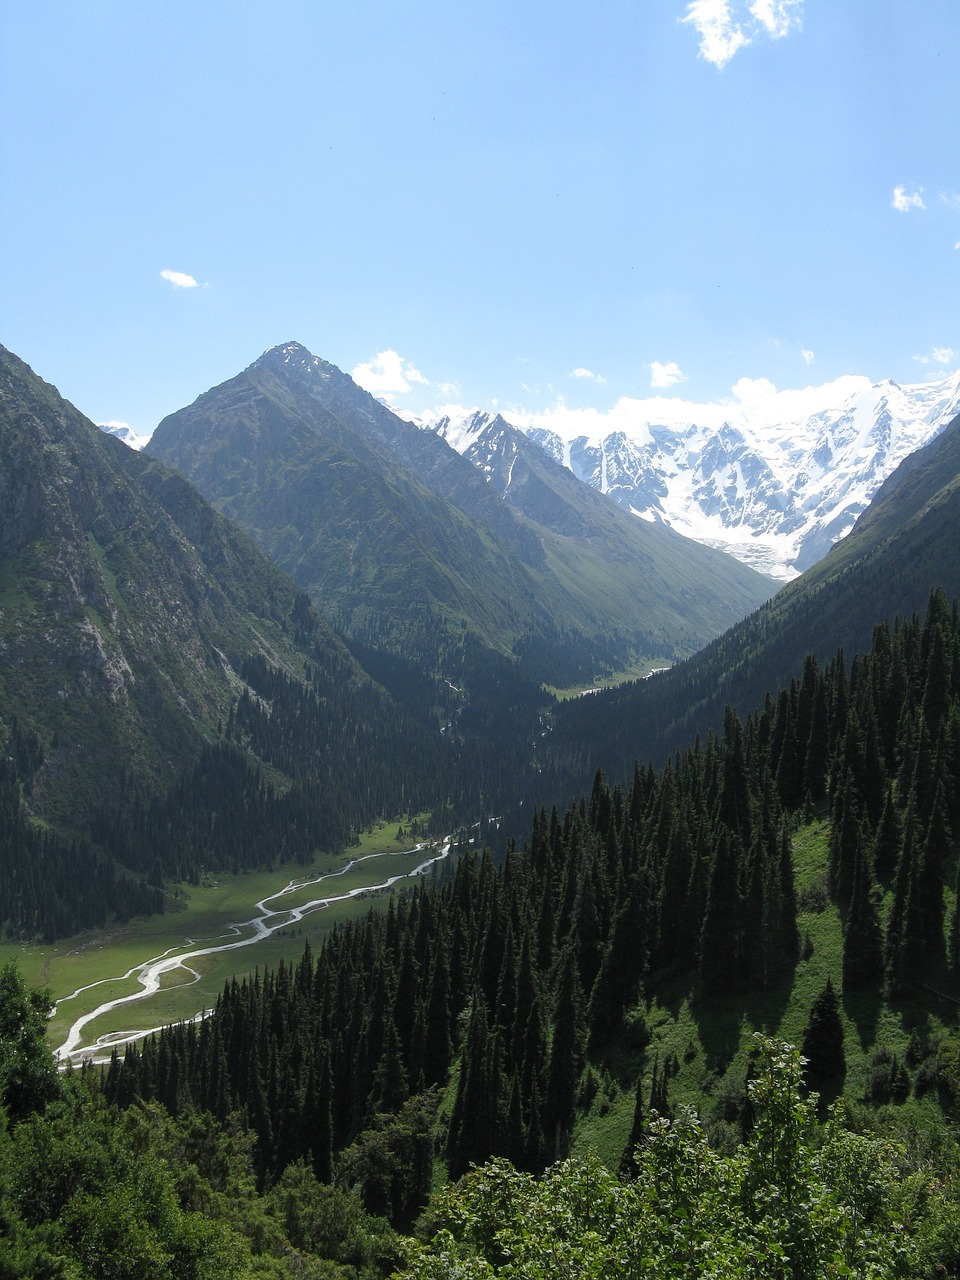 kyrgyzstan mountains nature free photo